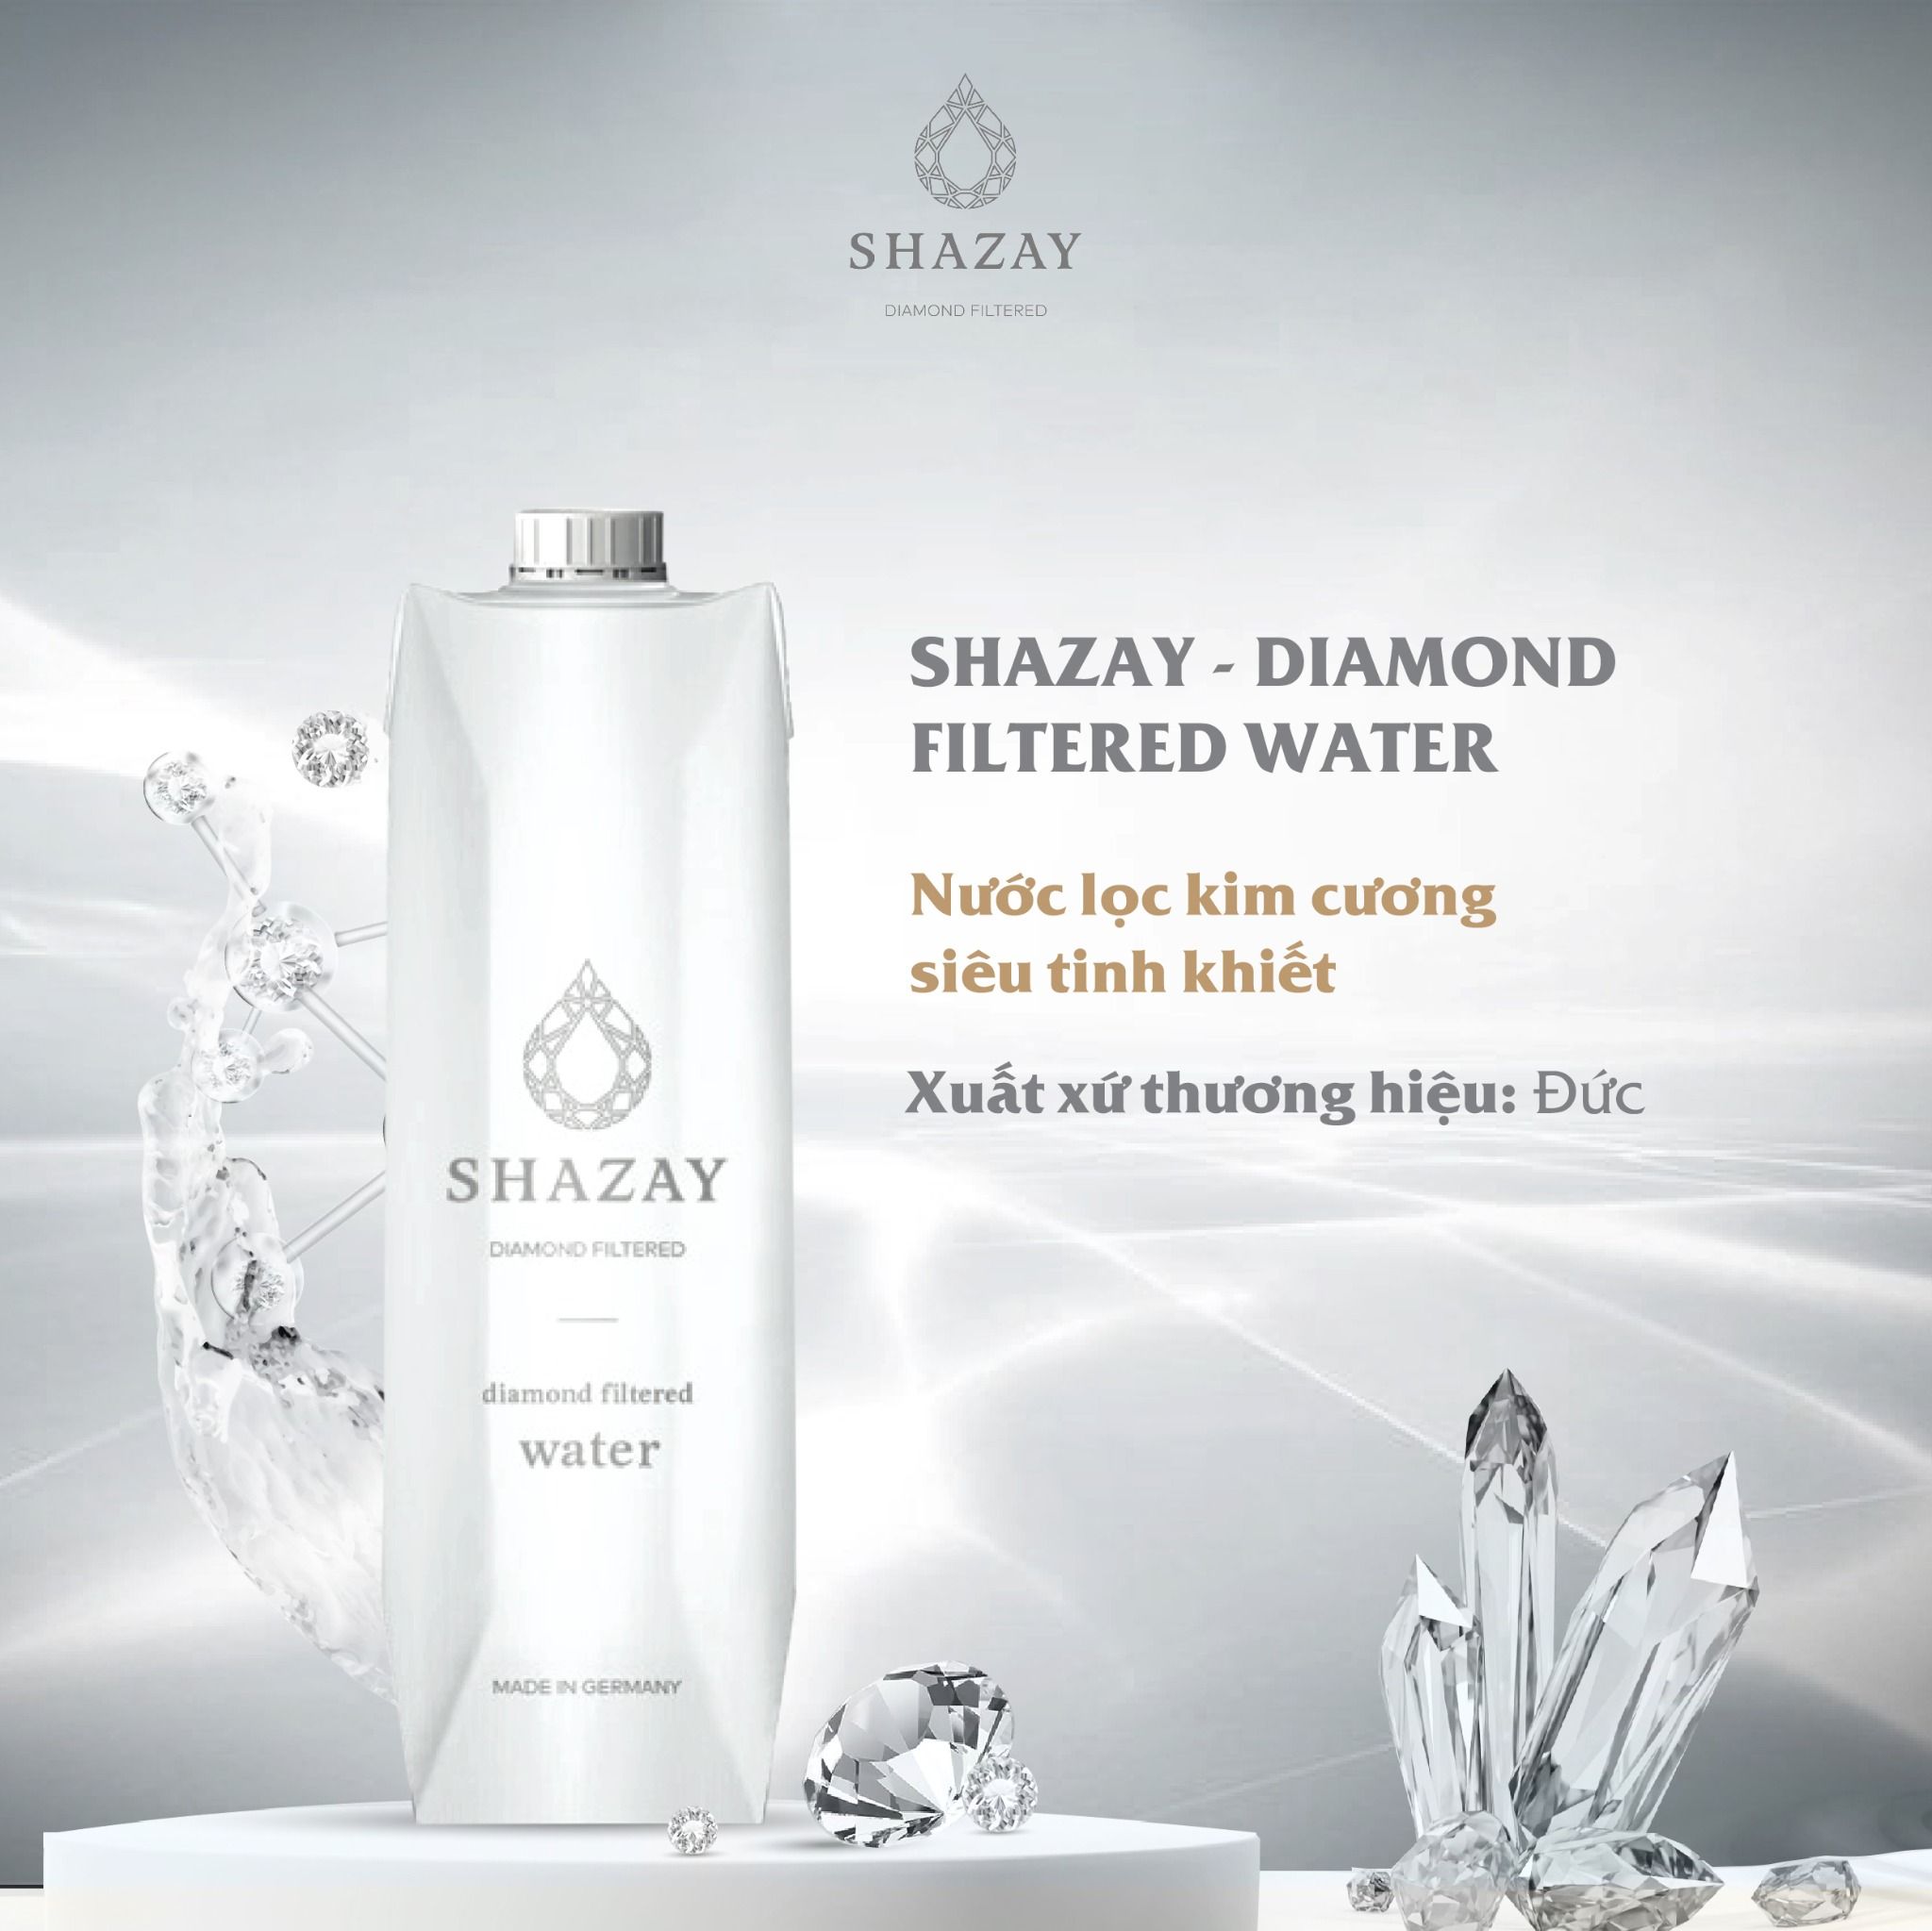  NƯỚC LỌC KIM CƯƠNG SHAZAY - DIAMOND FILTERED WATER 